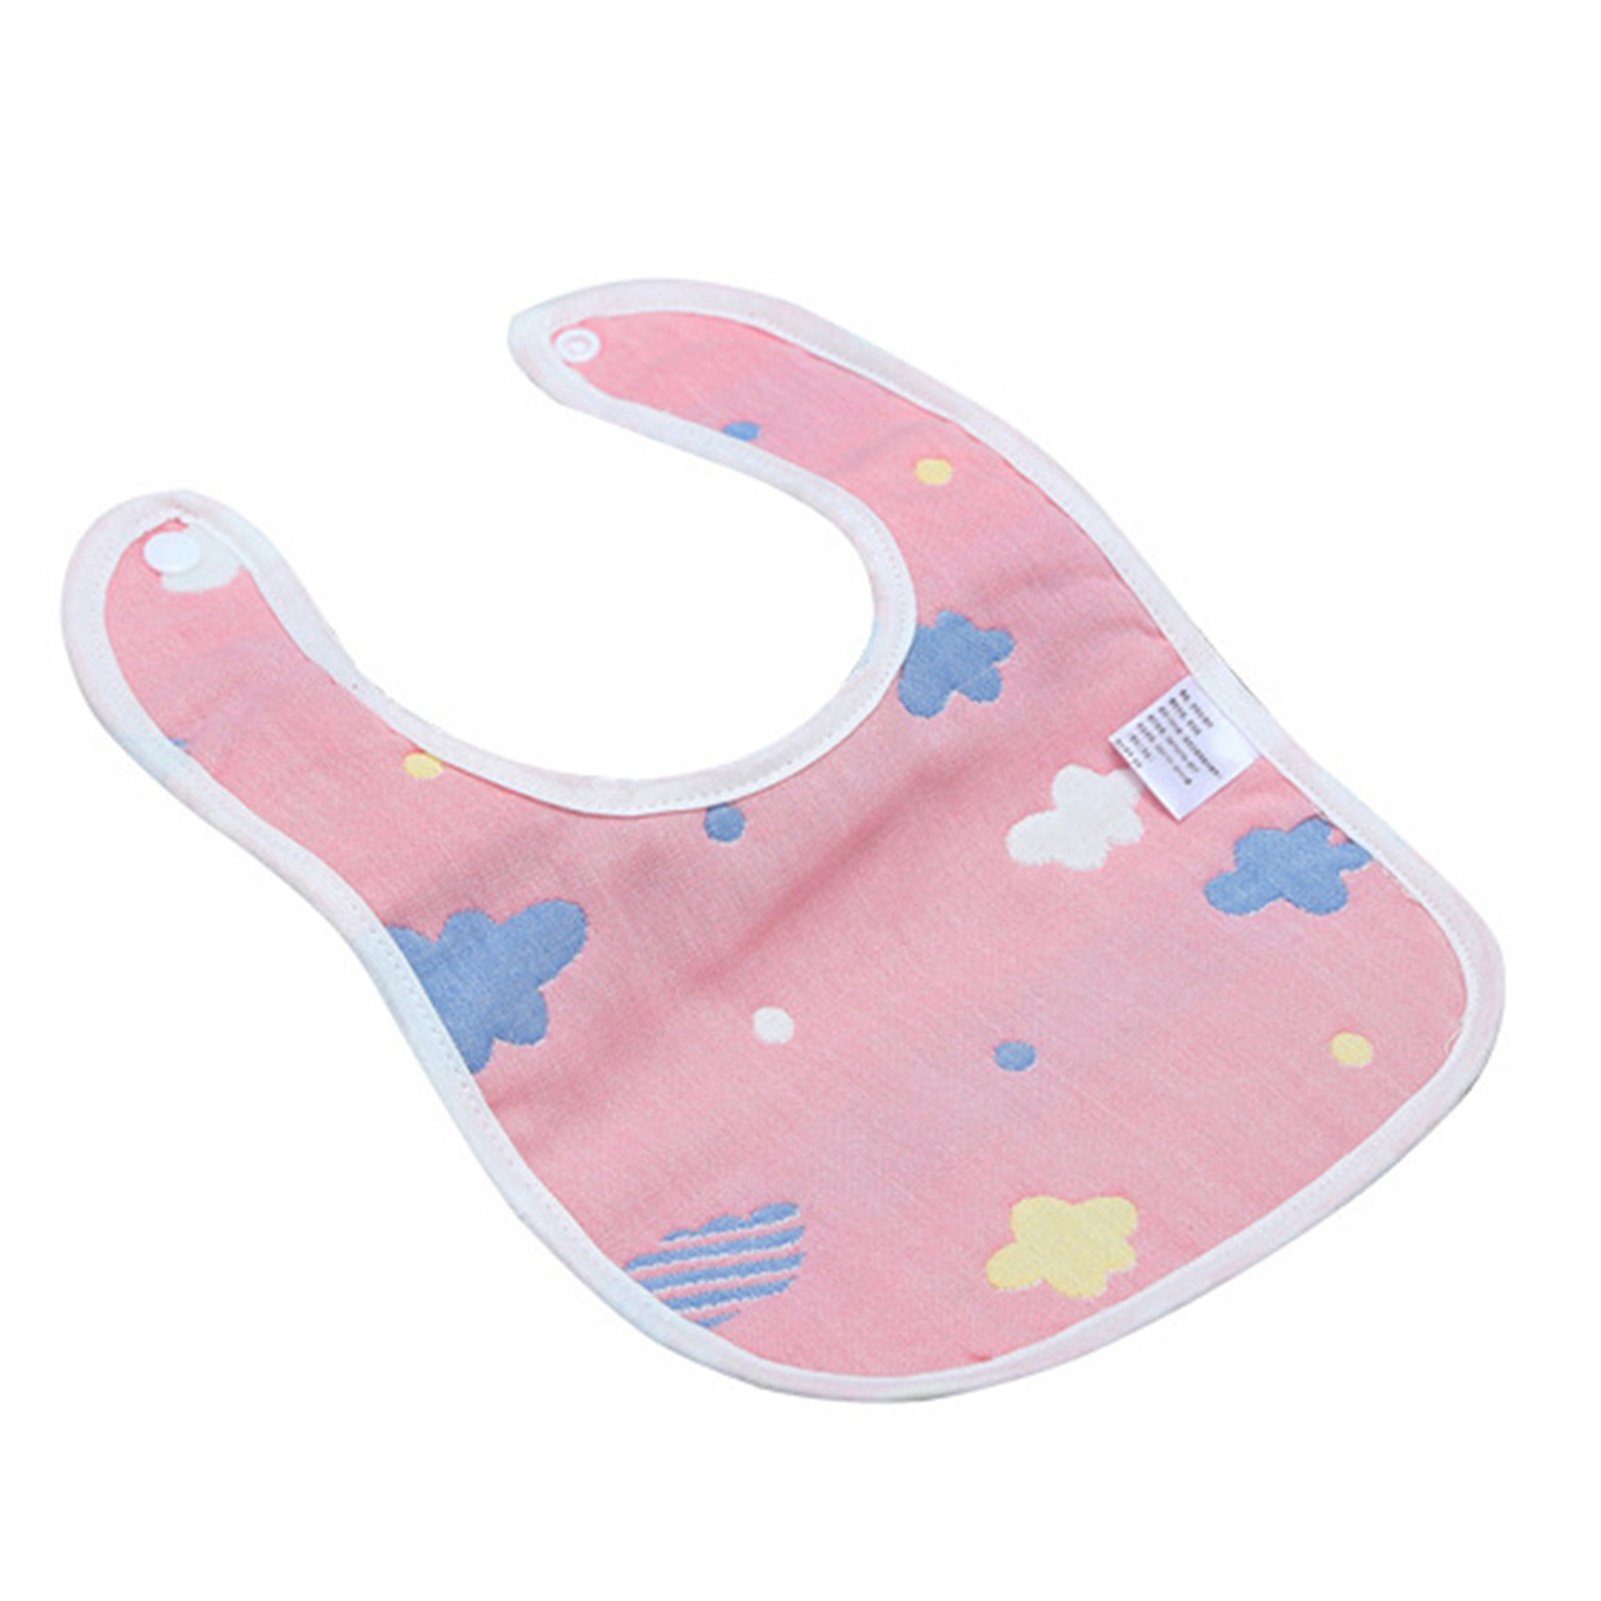 Baby-Fütterungs-Sabber-Lätzchen, Mehrzweck-Baby-Speichel-Handtuch pink Lätzchen Blusmart cloud